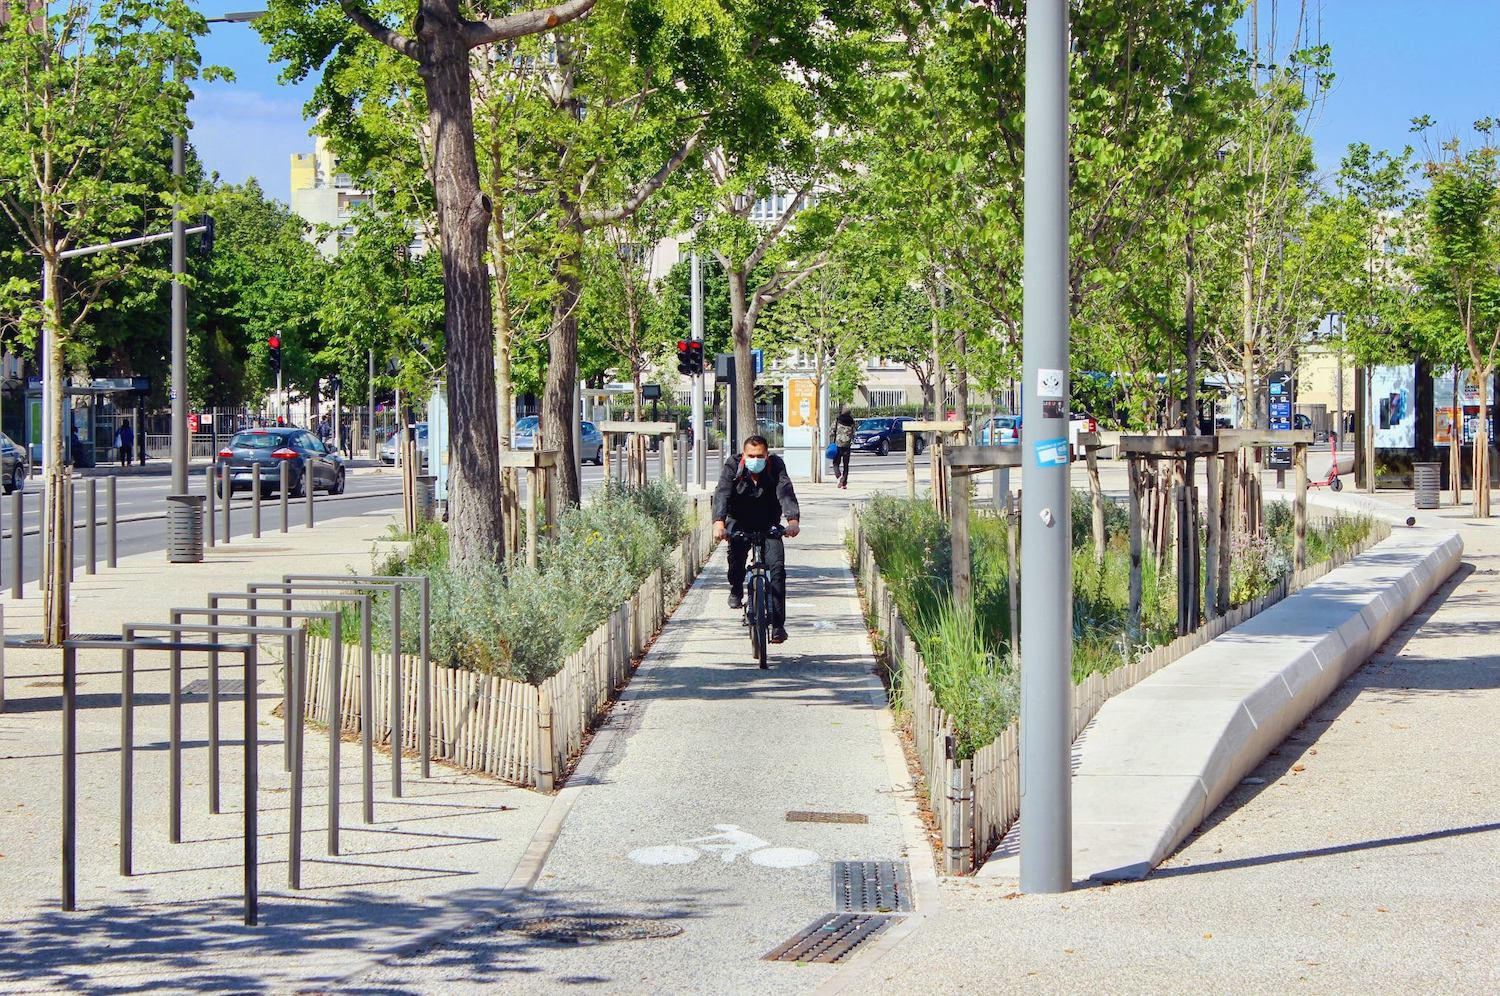 zfe, Transports et vélo électrique gratuits pour inciter l&#8217;arrêt des véhicules polluants en centre-ville, Made in Marseille